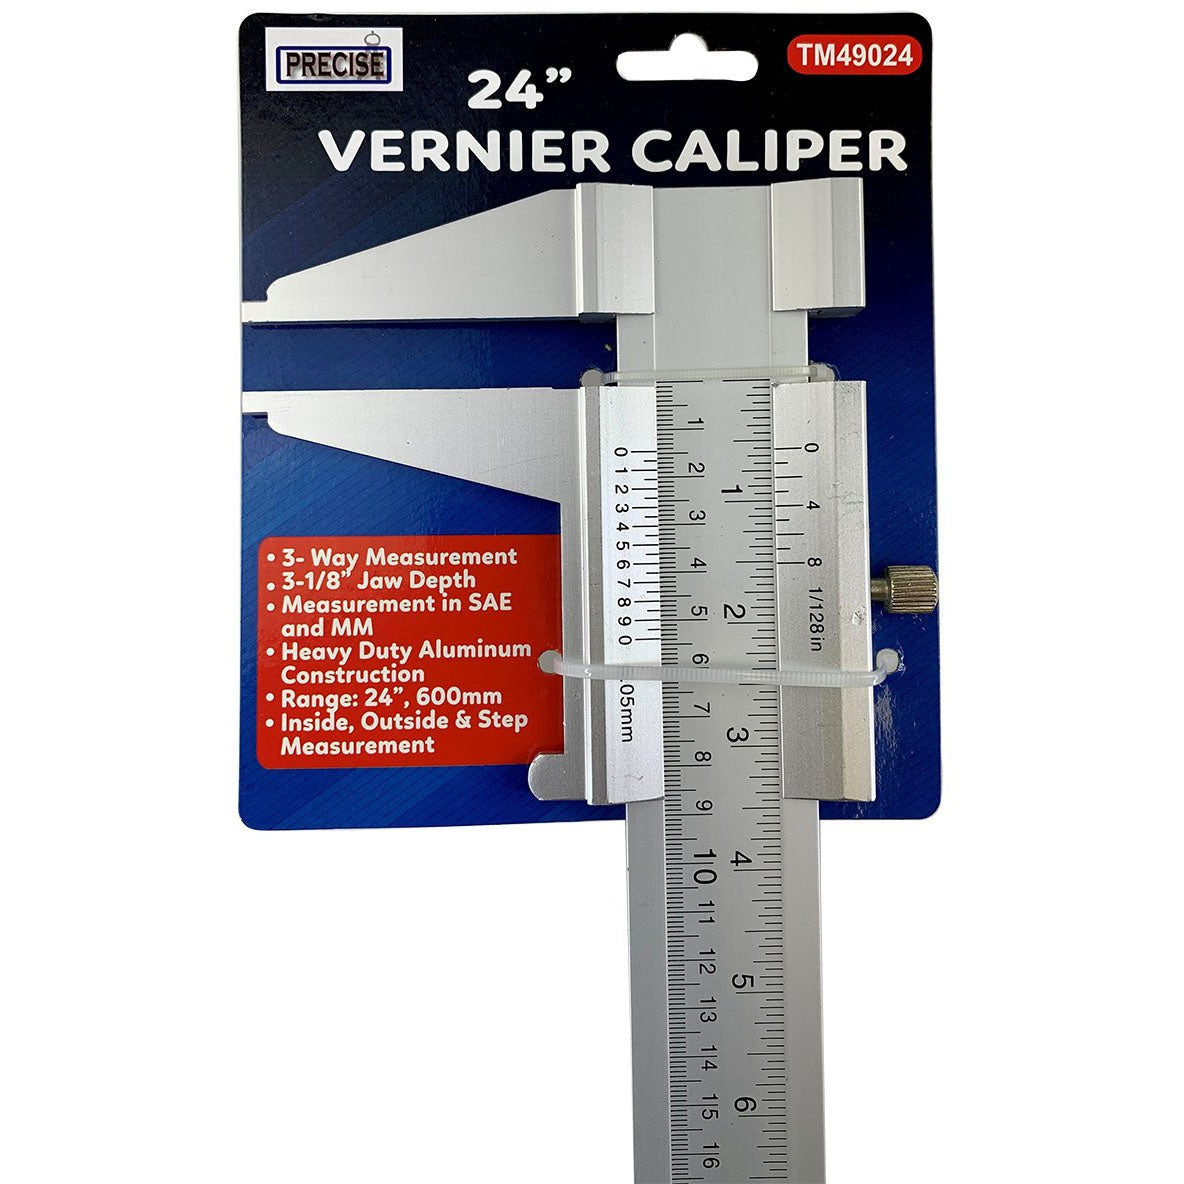 24" Vernier Caliper - TM-49024 - ToolUSA